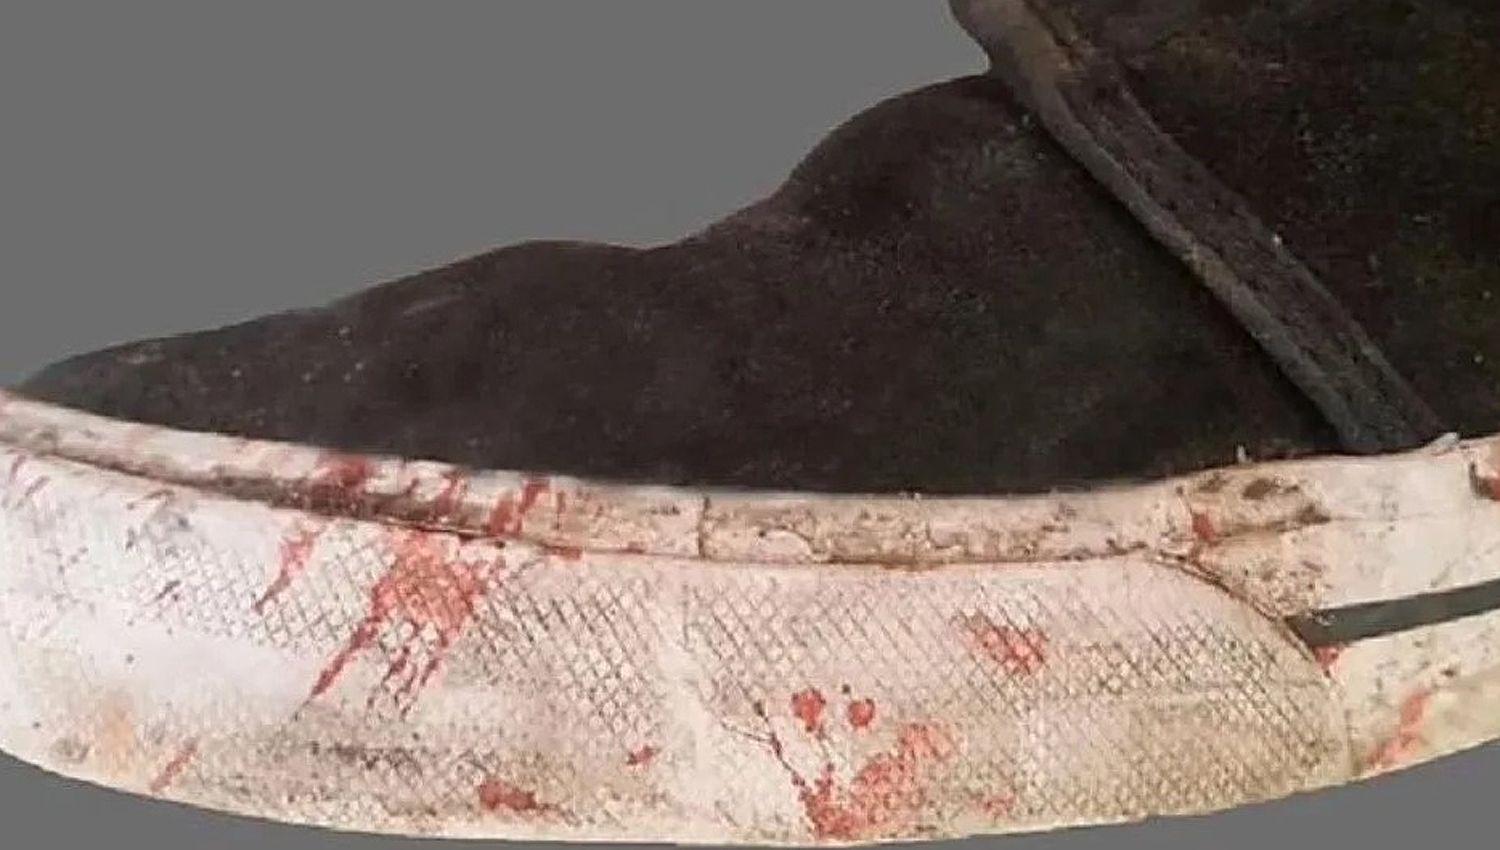 La zapatilla manchada con sangre es una de las principales pruebas en torno al homicidio sucedido en Villa Gesell